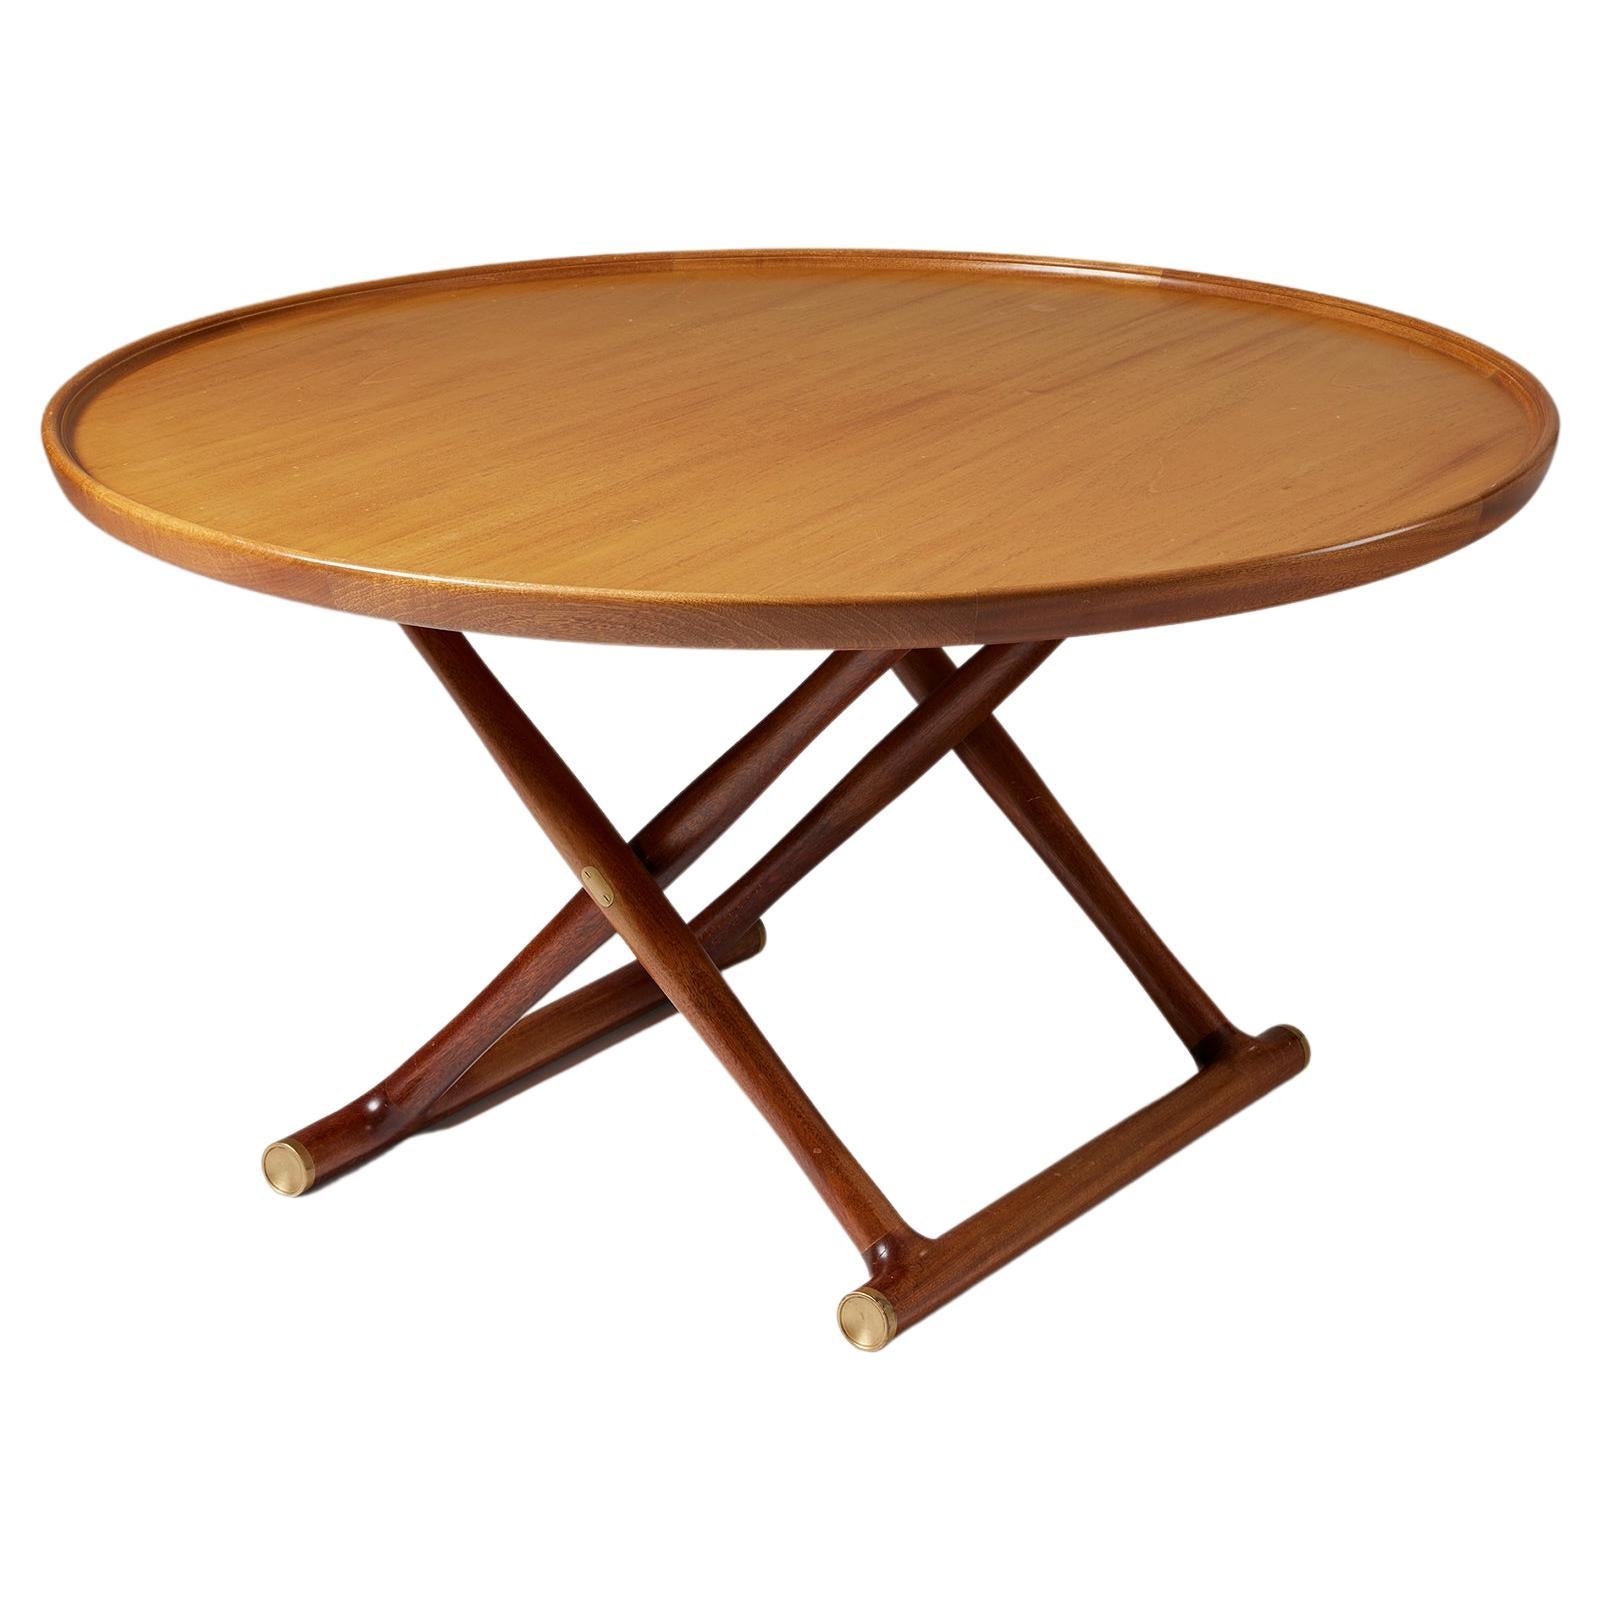 ‘Egyptian Table’ Designed by Mogens Lassen for Rud. Rasmussen, Denmark, 1935